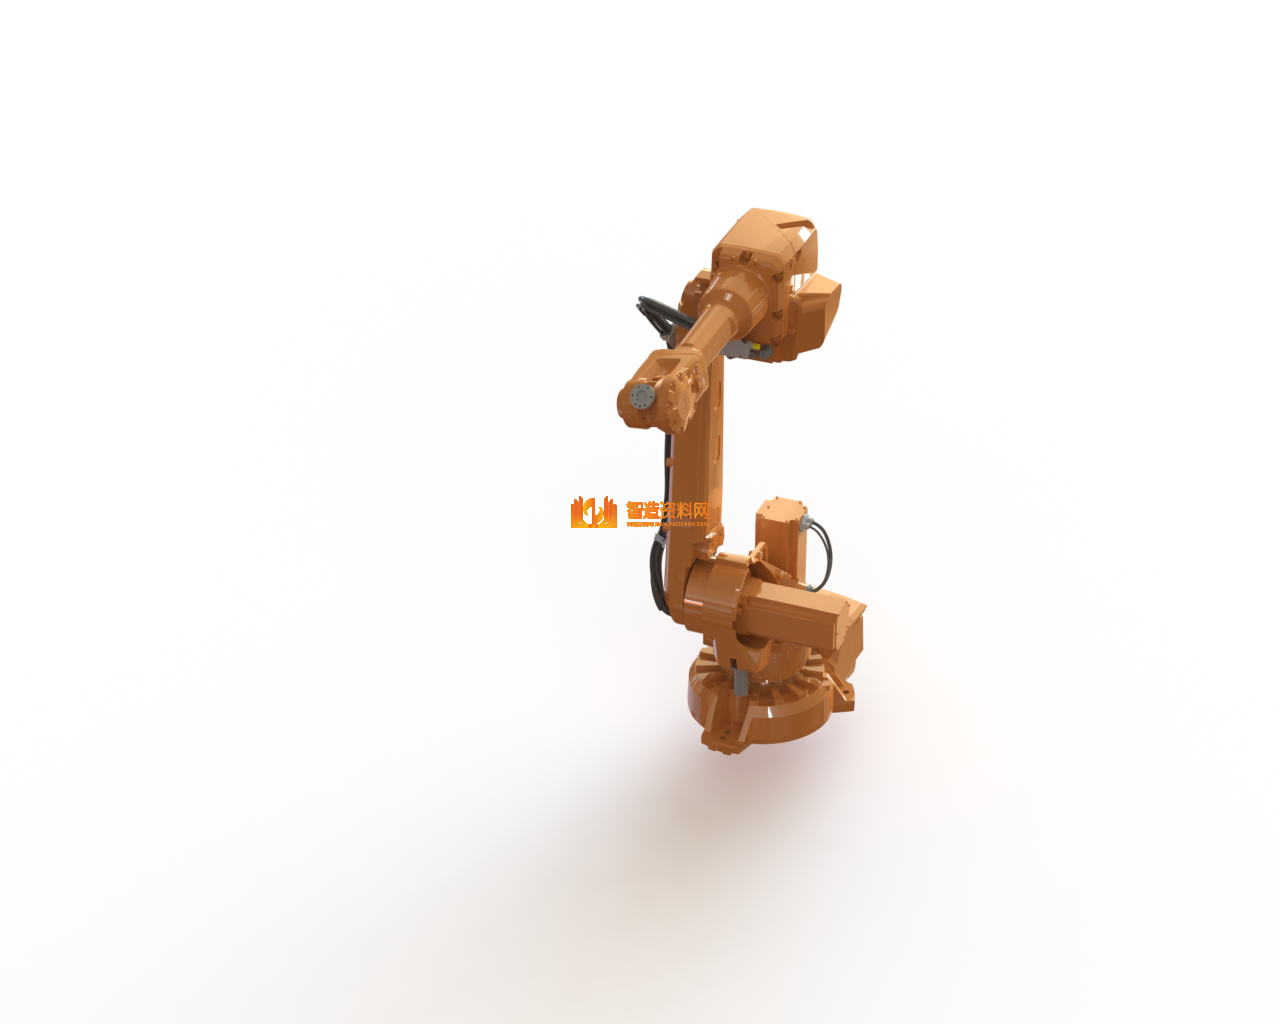 abb-robot-irb-2600-12-1-85-1机械臂,NeadPay,第1张